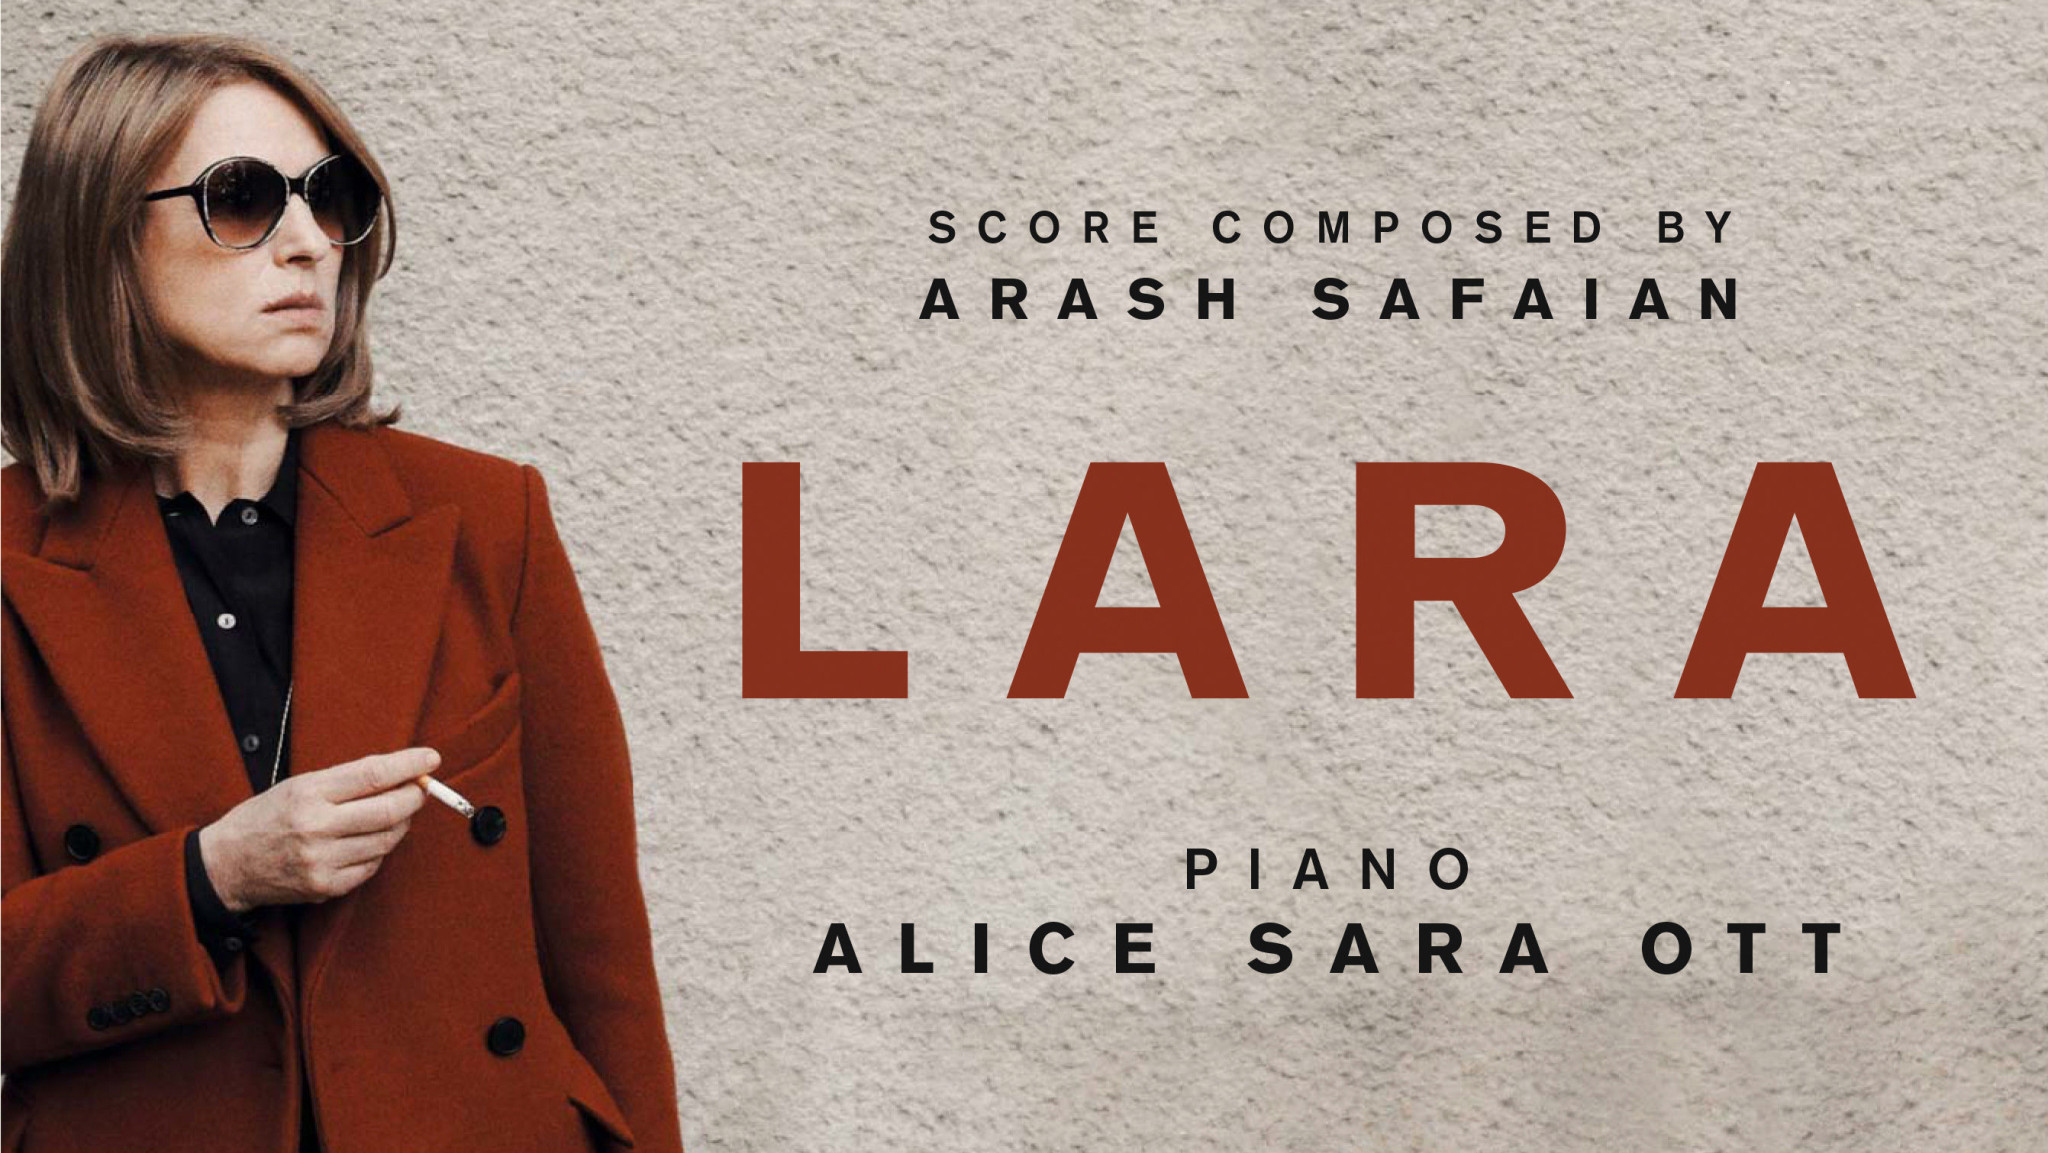 Die Poesie der Musik im Film – Safaians außergewöhnlicher Soundtrack zu LARA eingespielt von Alice Sara Ott